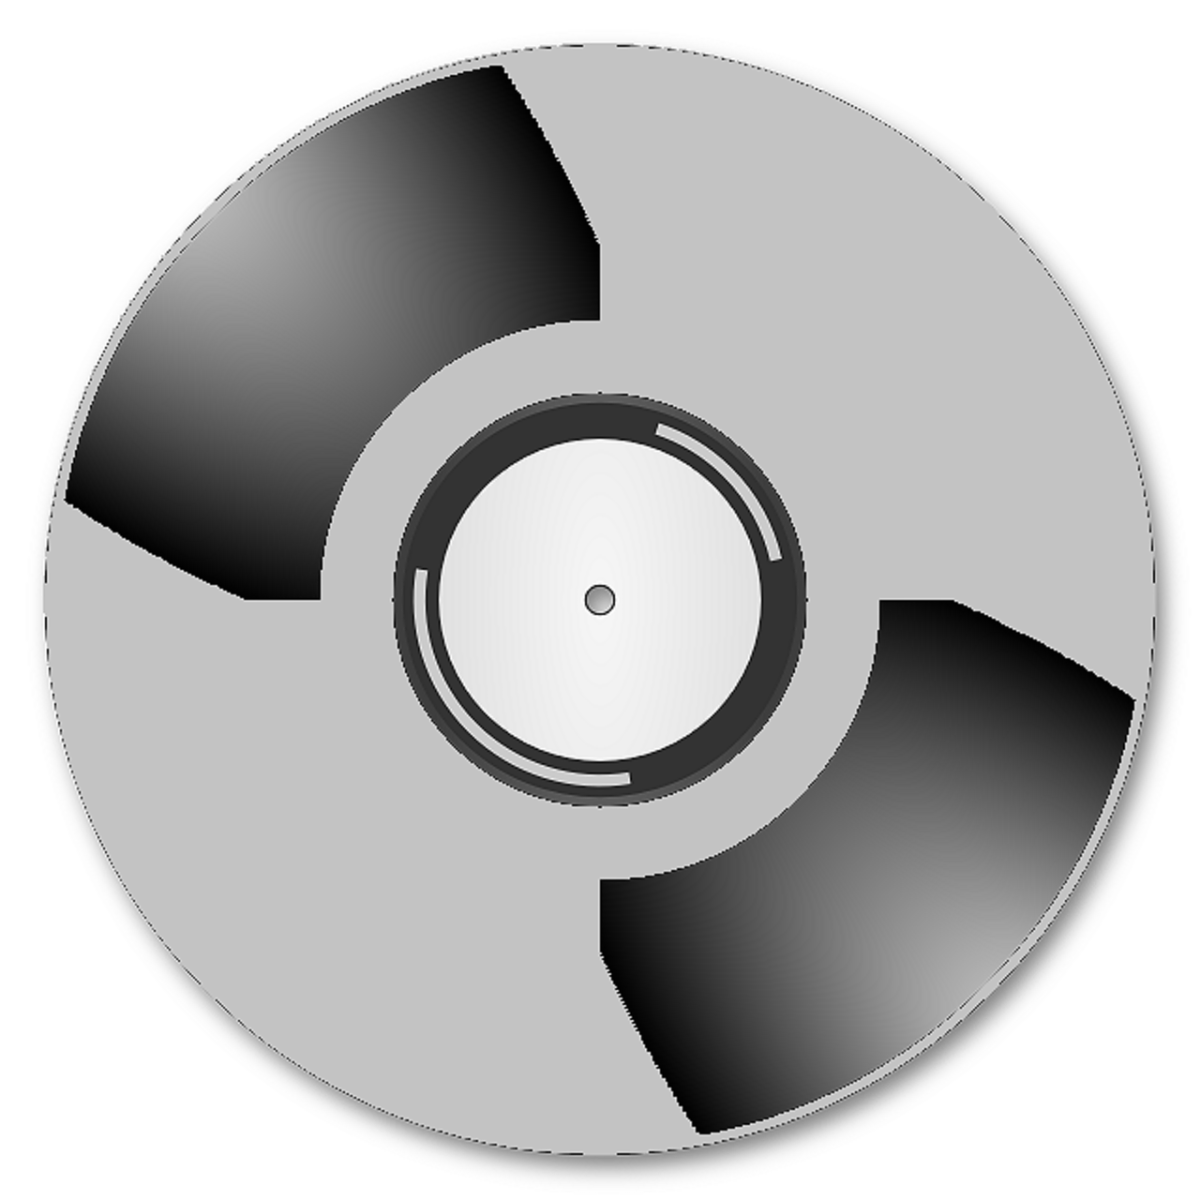 Cd pictures. Компьютерный диск. CD диск без фона. Музыкальный диск. Изображение на компактном диске.